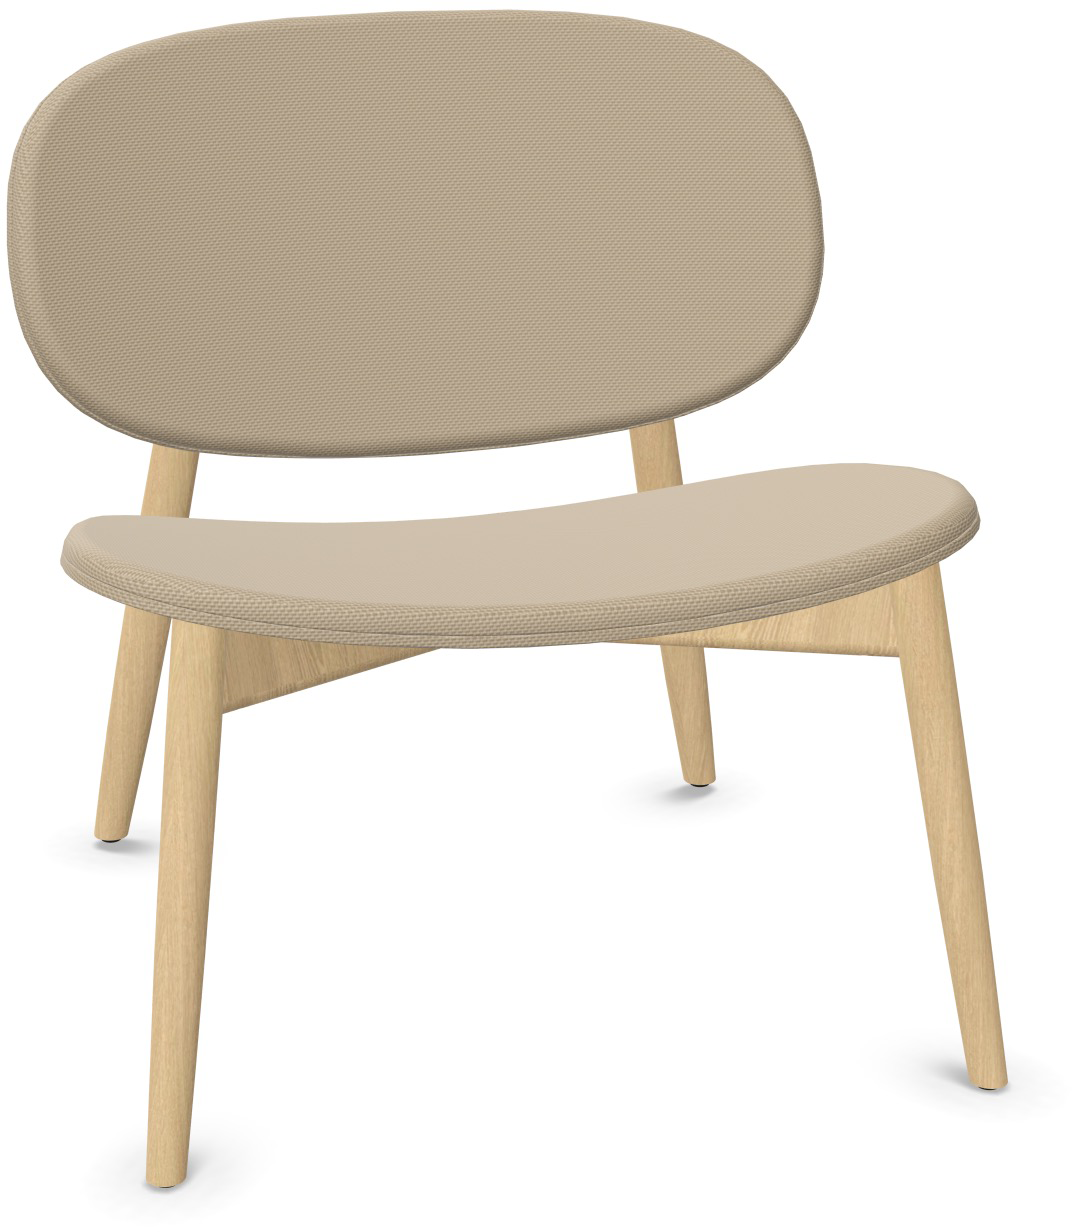 HARMO Relaxsessel in Hellbraun präsentiert im Onlineshop von KAQTU Design AG. Sessel ist von Infiniti Design